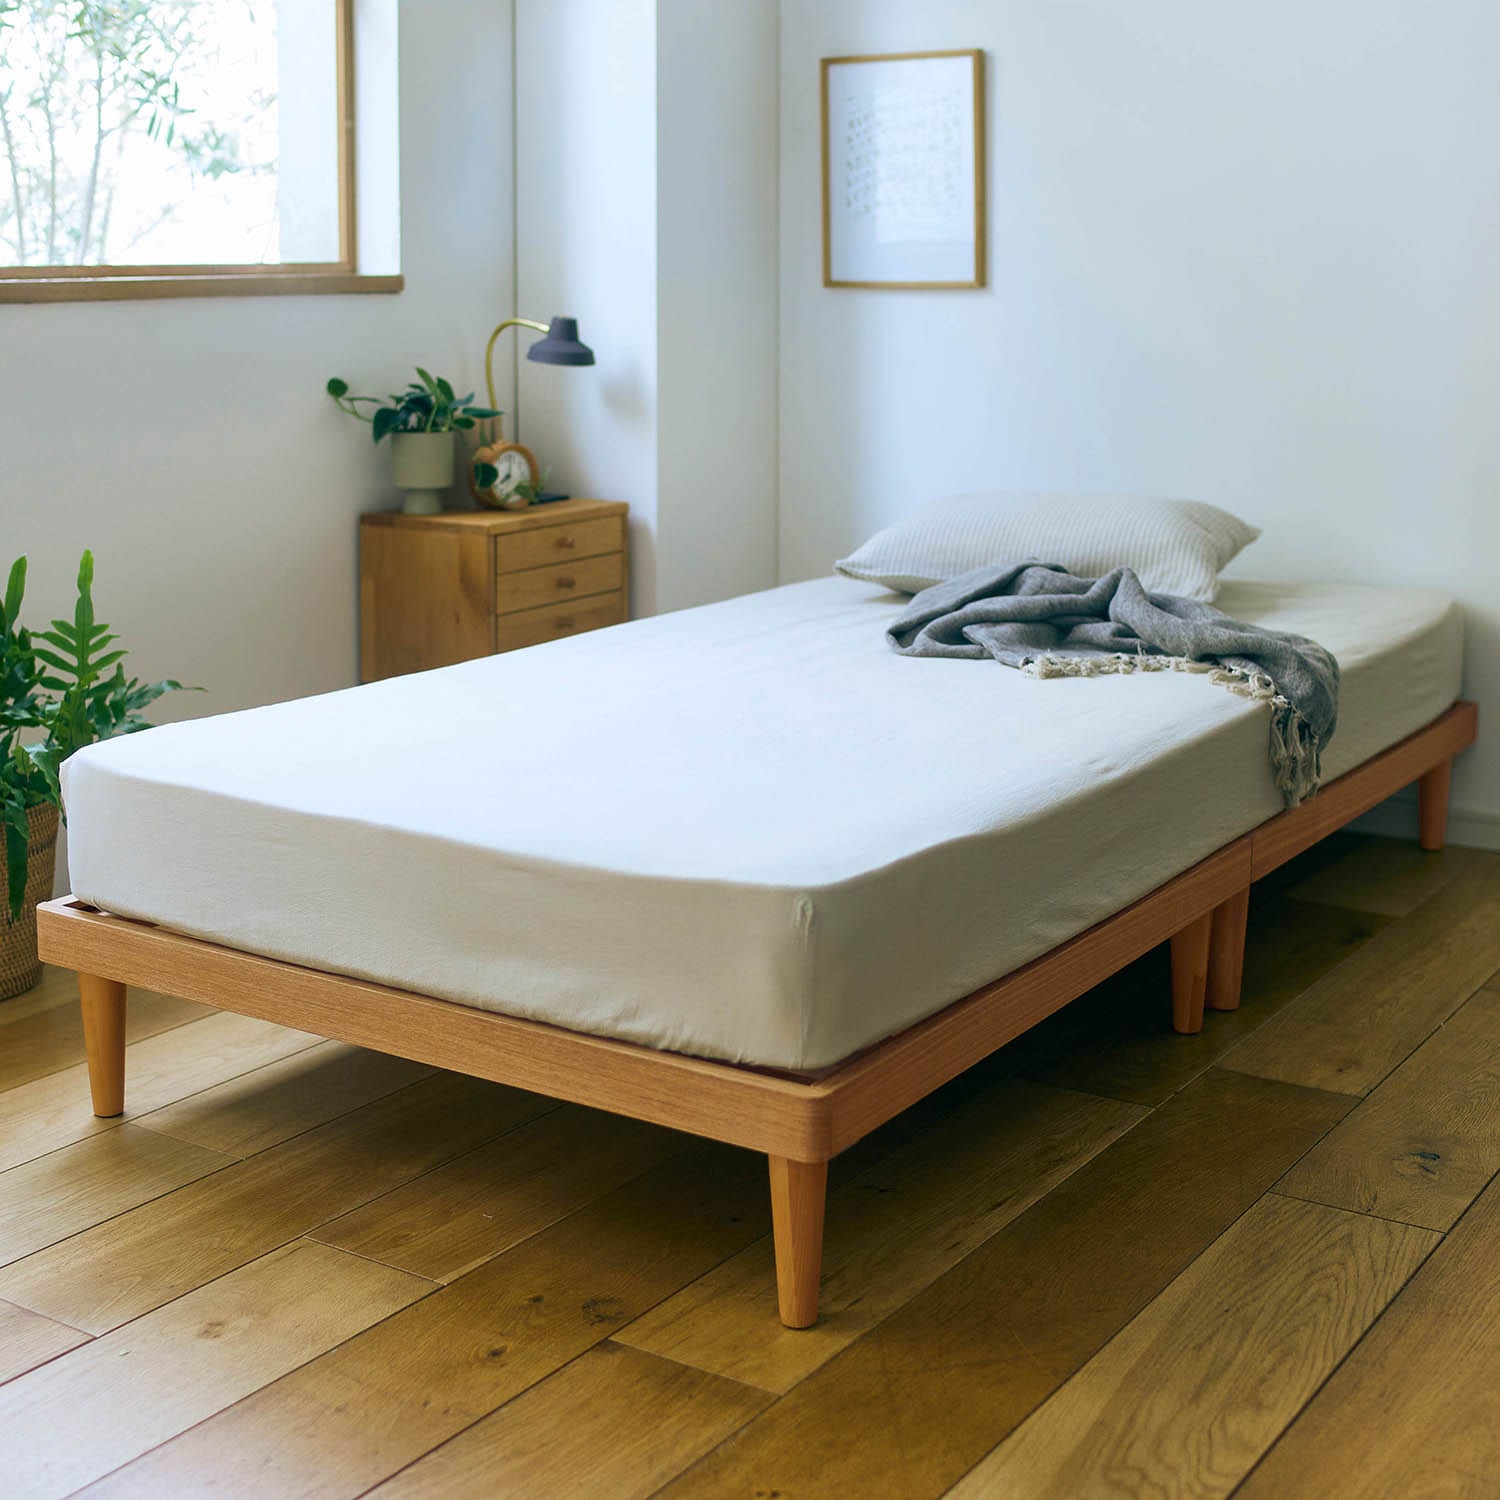 11月8日まで大型商品送料無料】 5分で組み立てられる木製すのこベッド